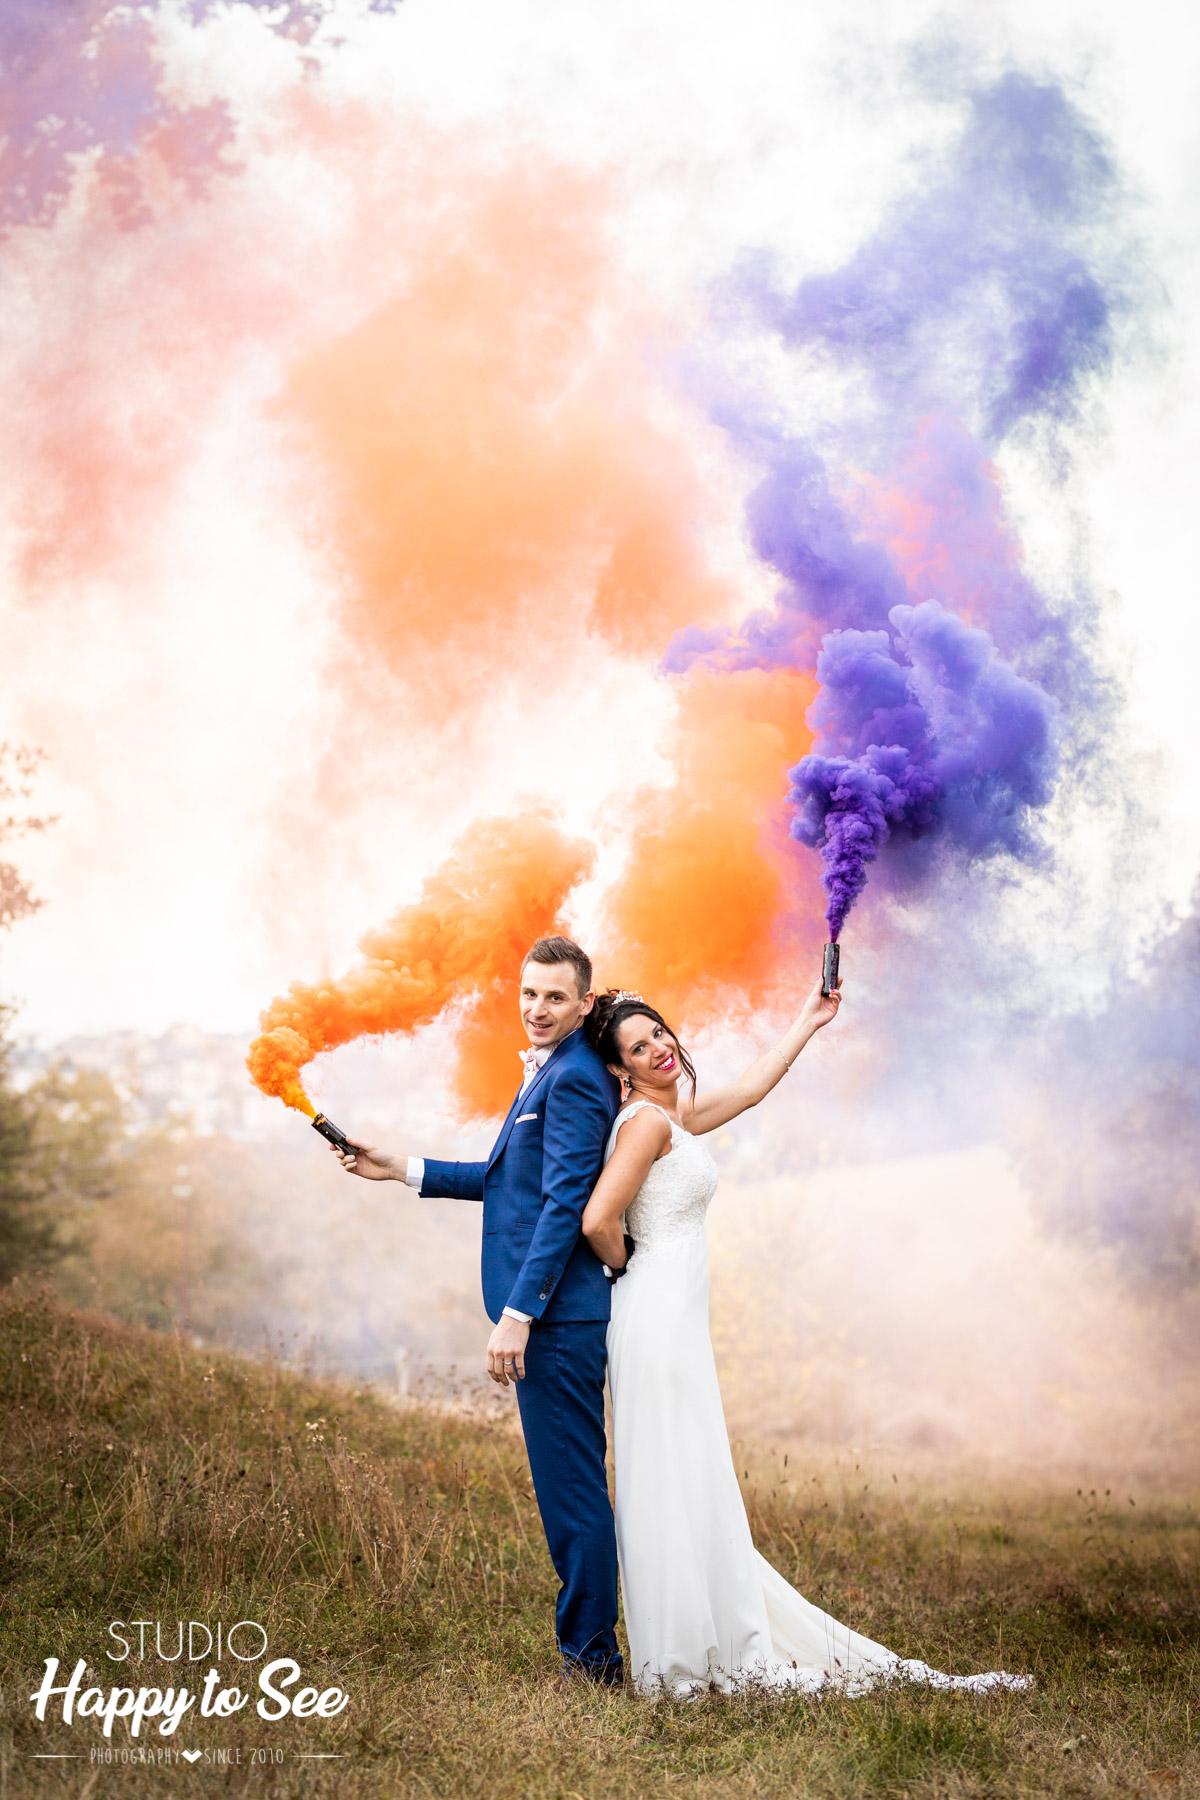 photographe mariage rodez domaine de combelles